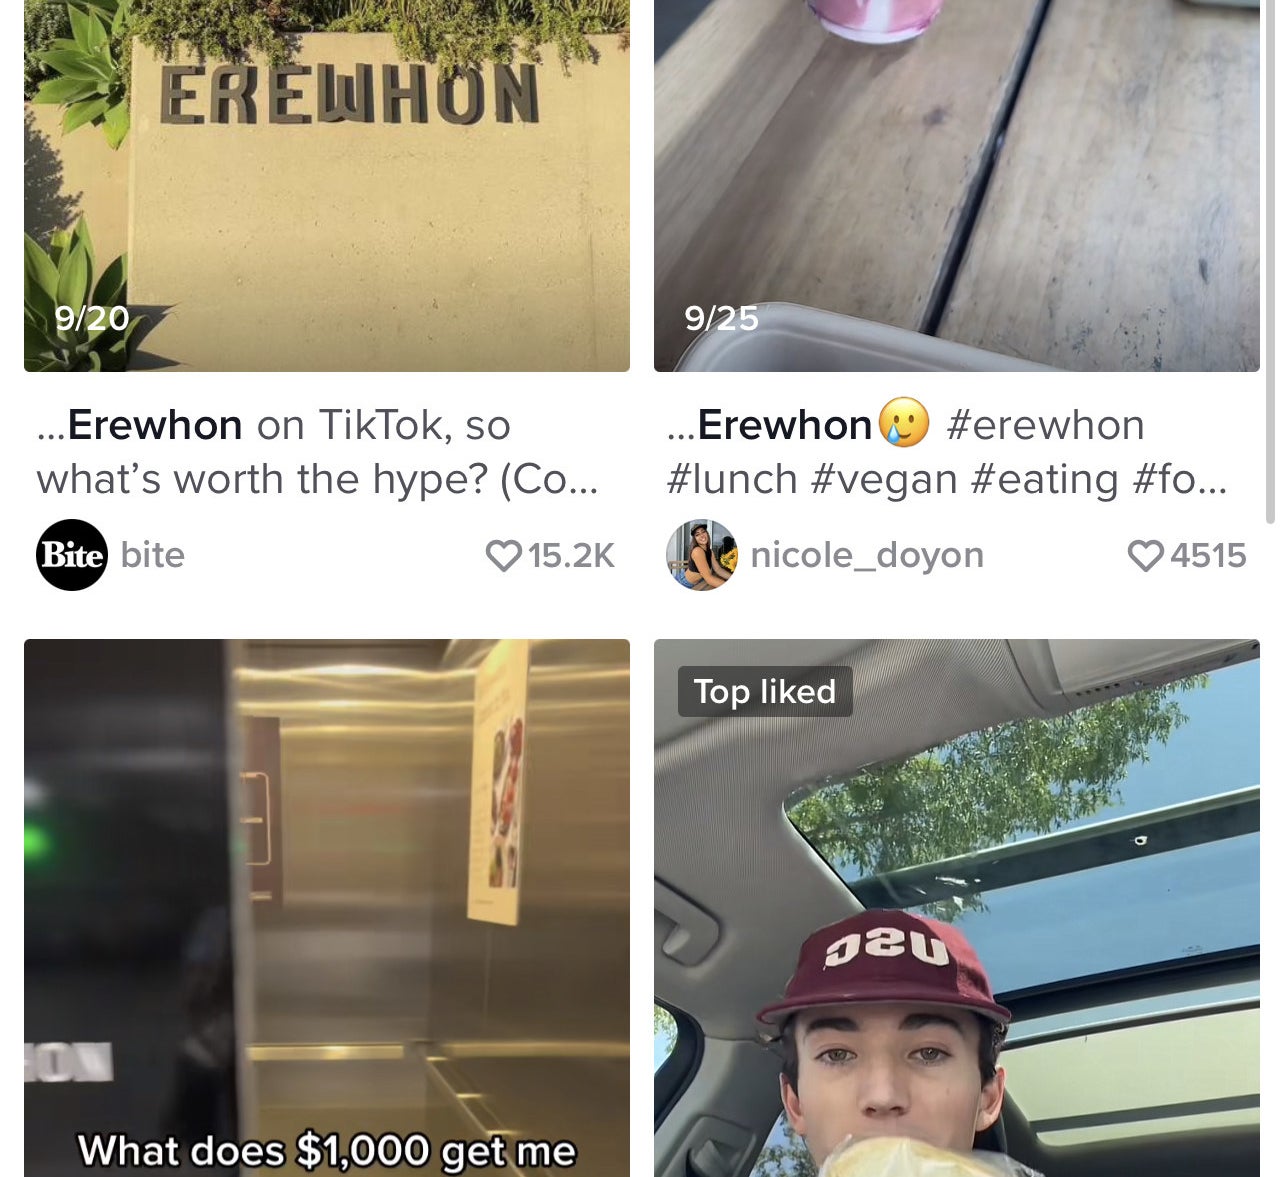 Two thumbnails for Erewhon walk-throughs on TikTok